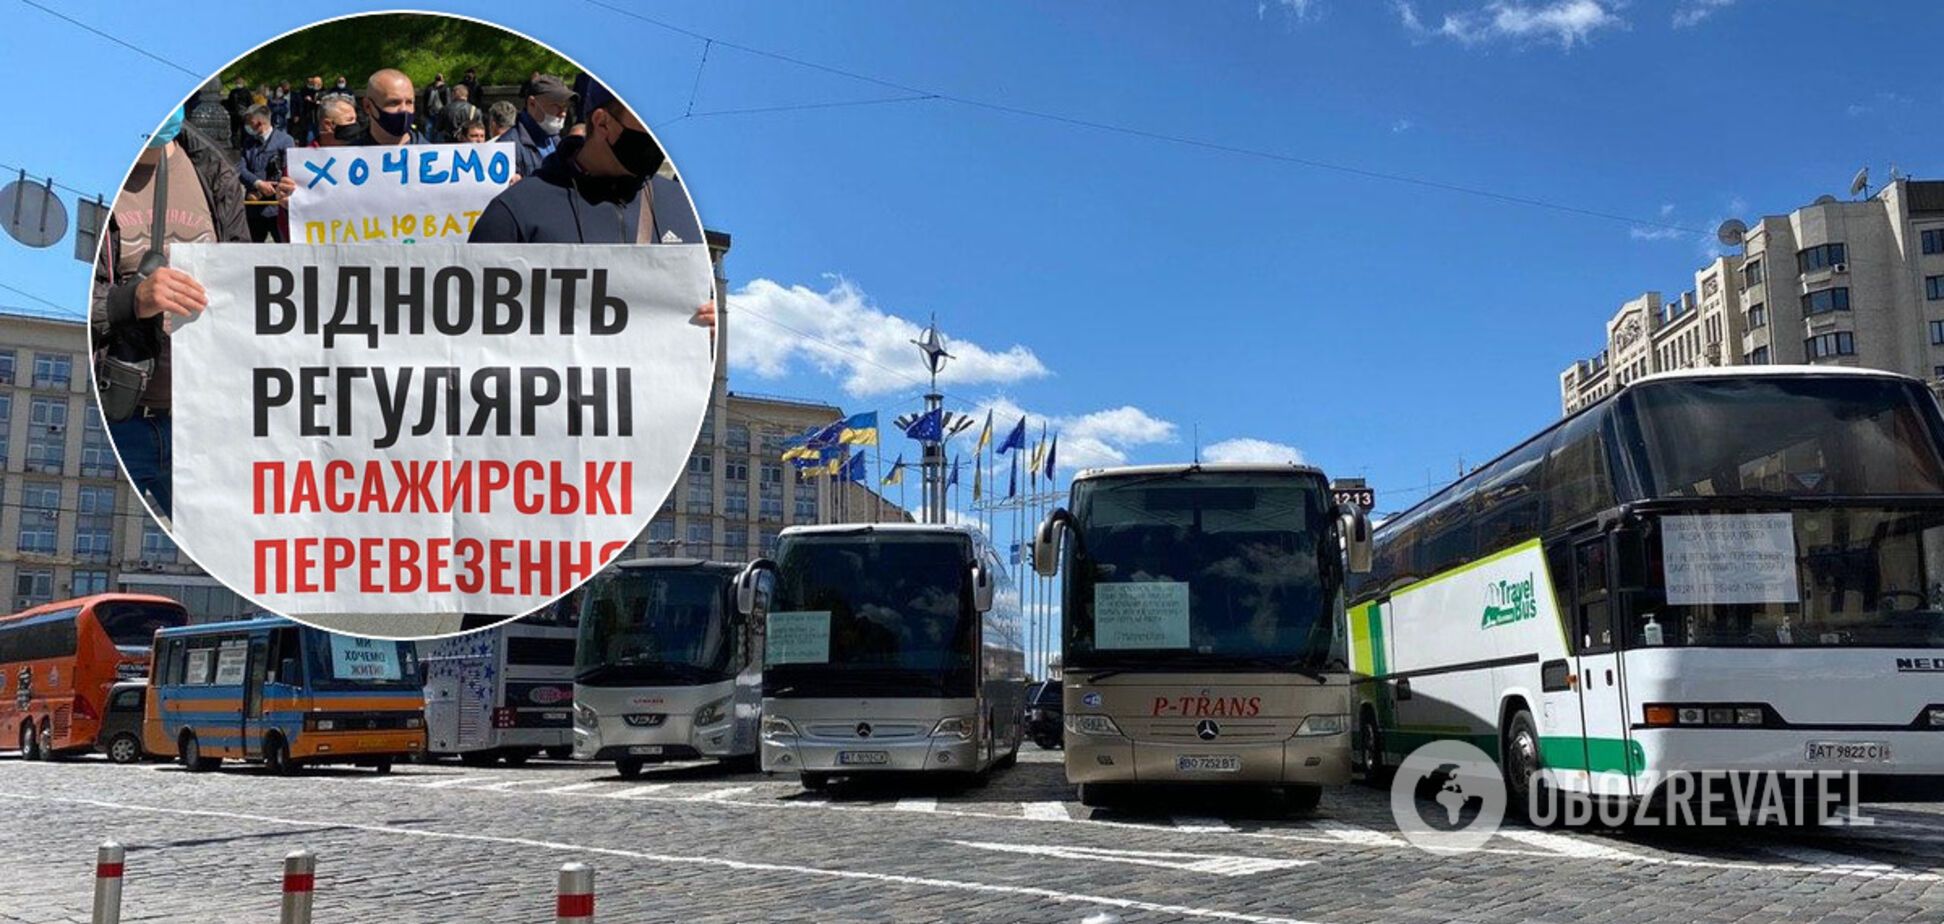 Кварцування і 10 годин на протязі: коли запустять транспорт в Україні й що загрожує пасажирам